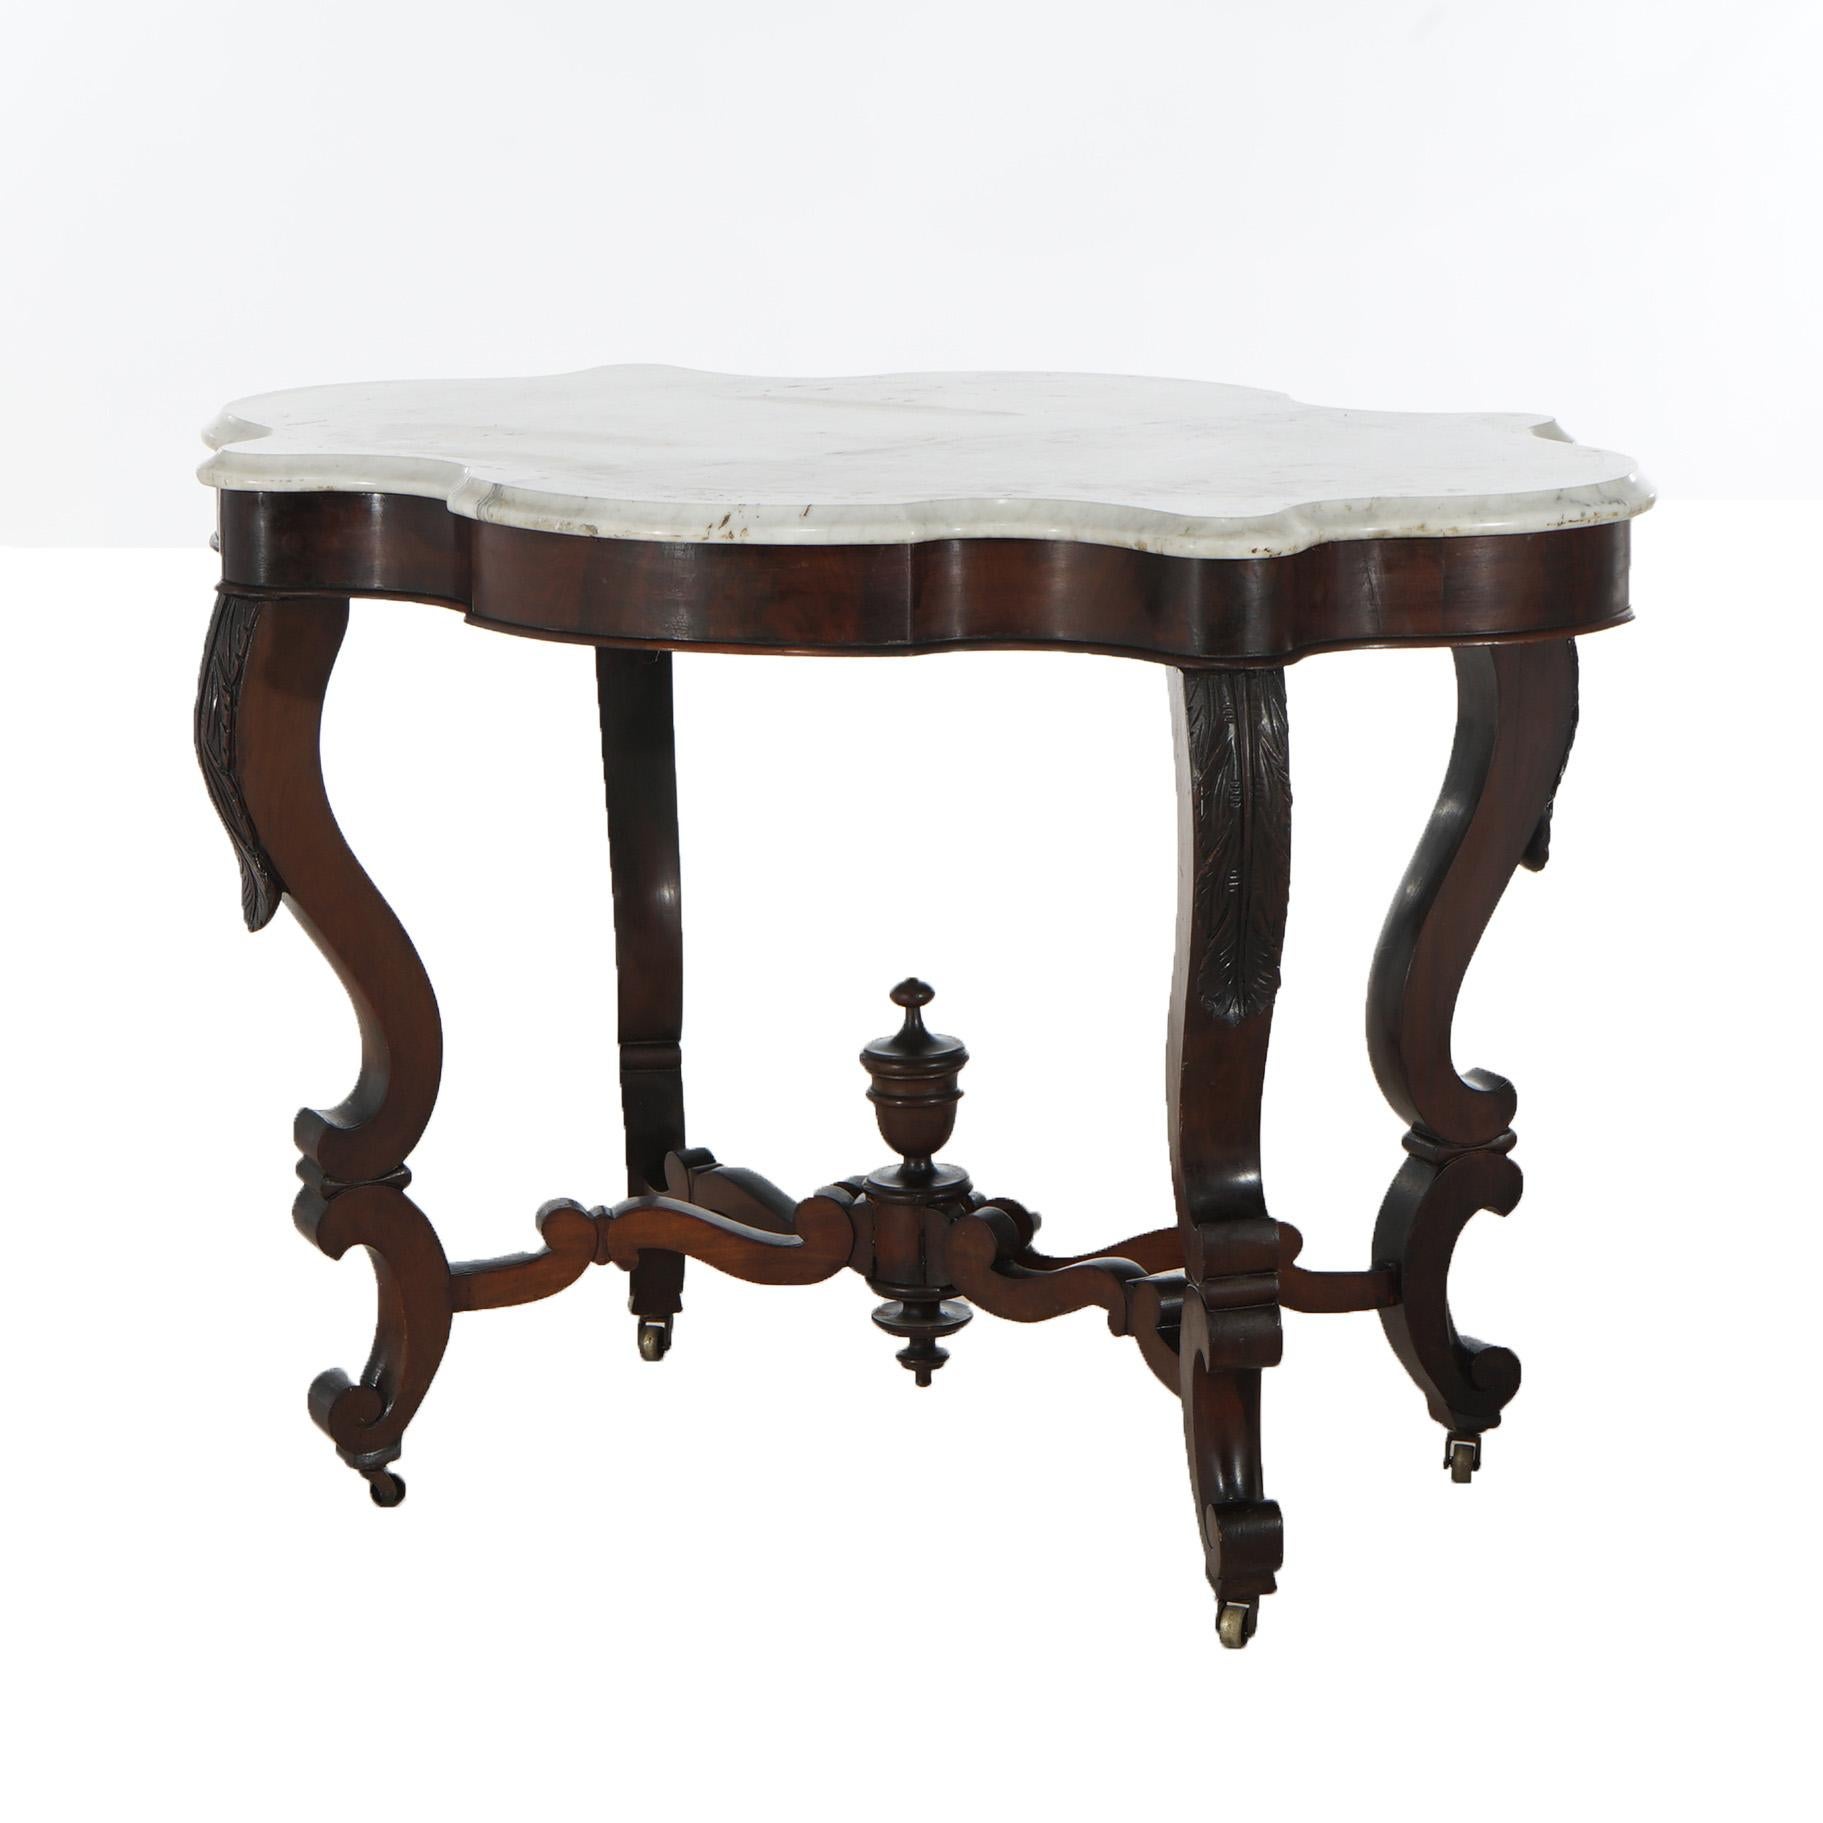 Antiker viktorianischer Tisch mit geschnitztem Nussbaum und abgeschrägter Schildkrötenplatte aus Marmor mit Cabriole-Beinen und zentraler Urne, um 1890

Maße - 29 